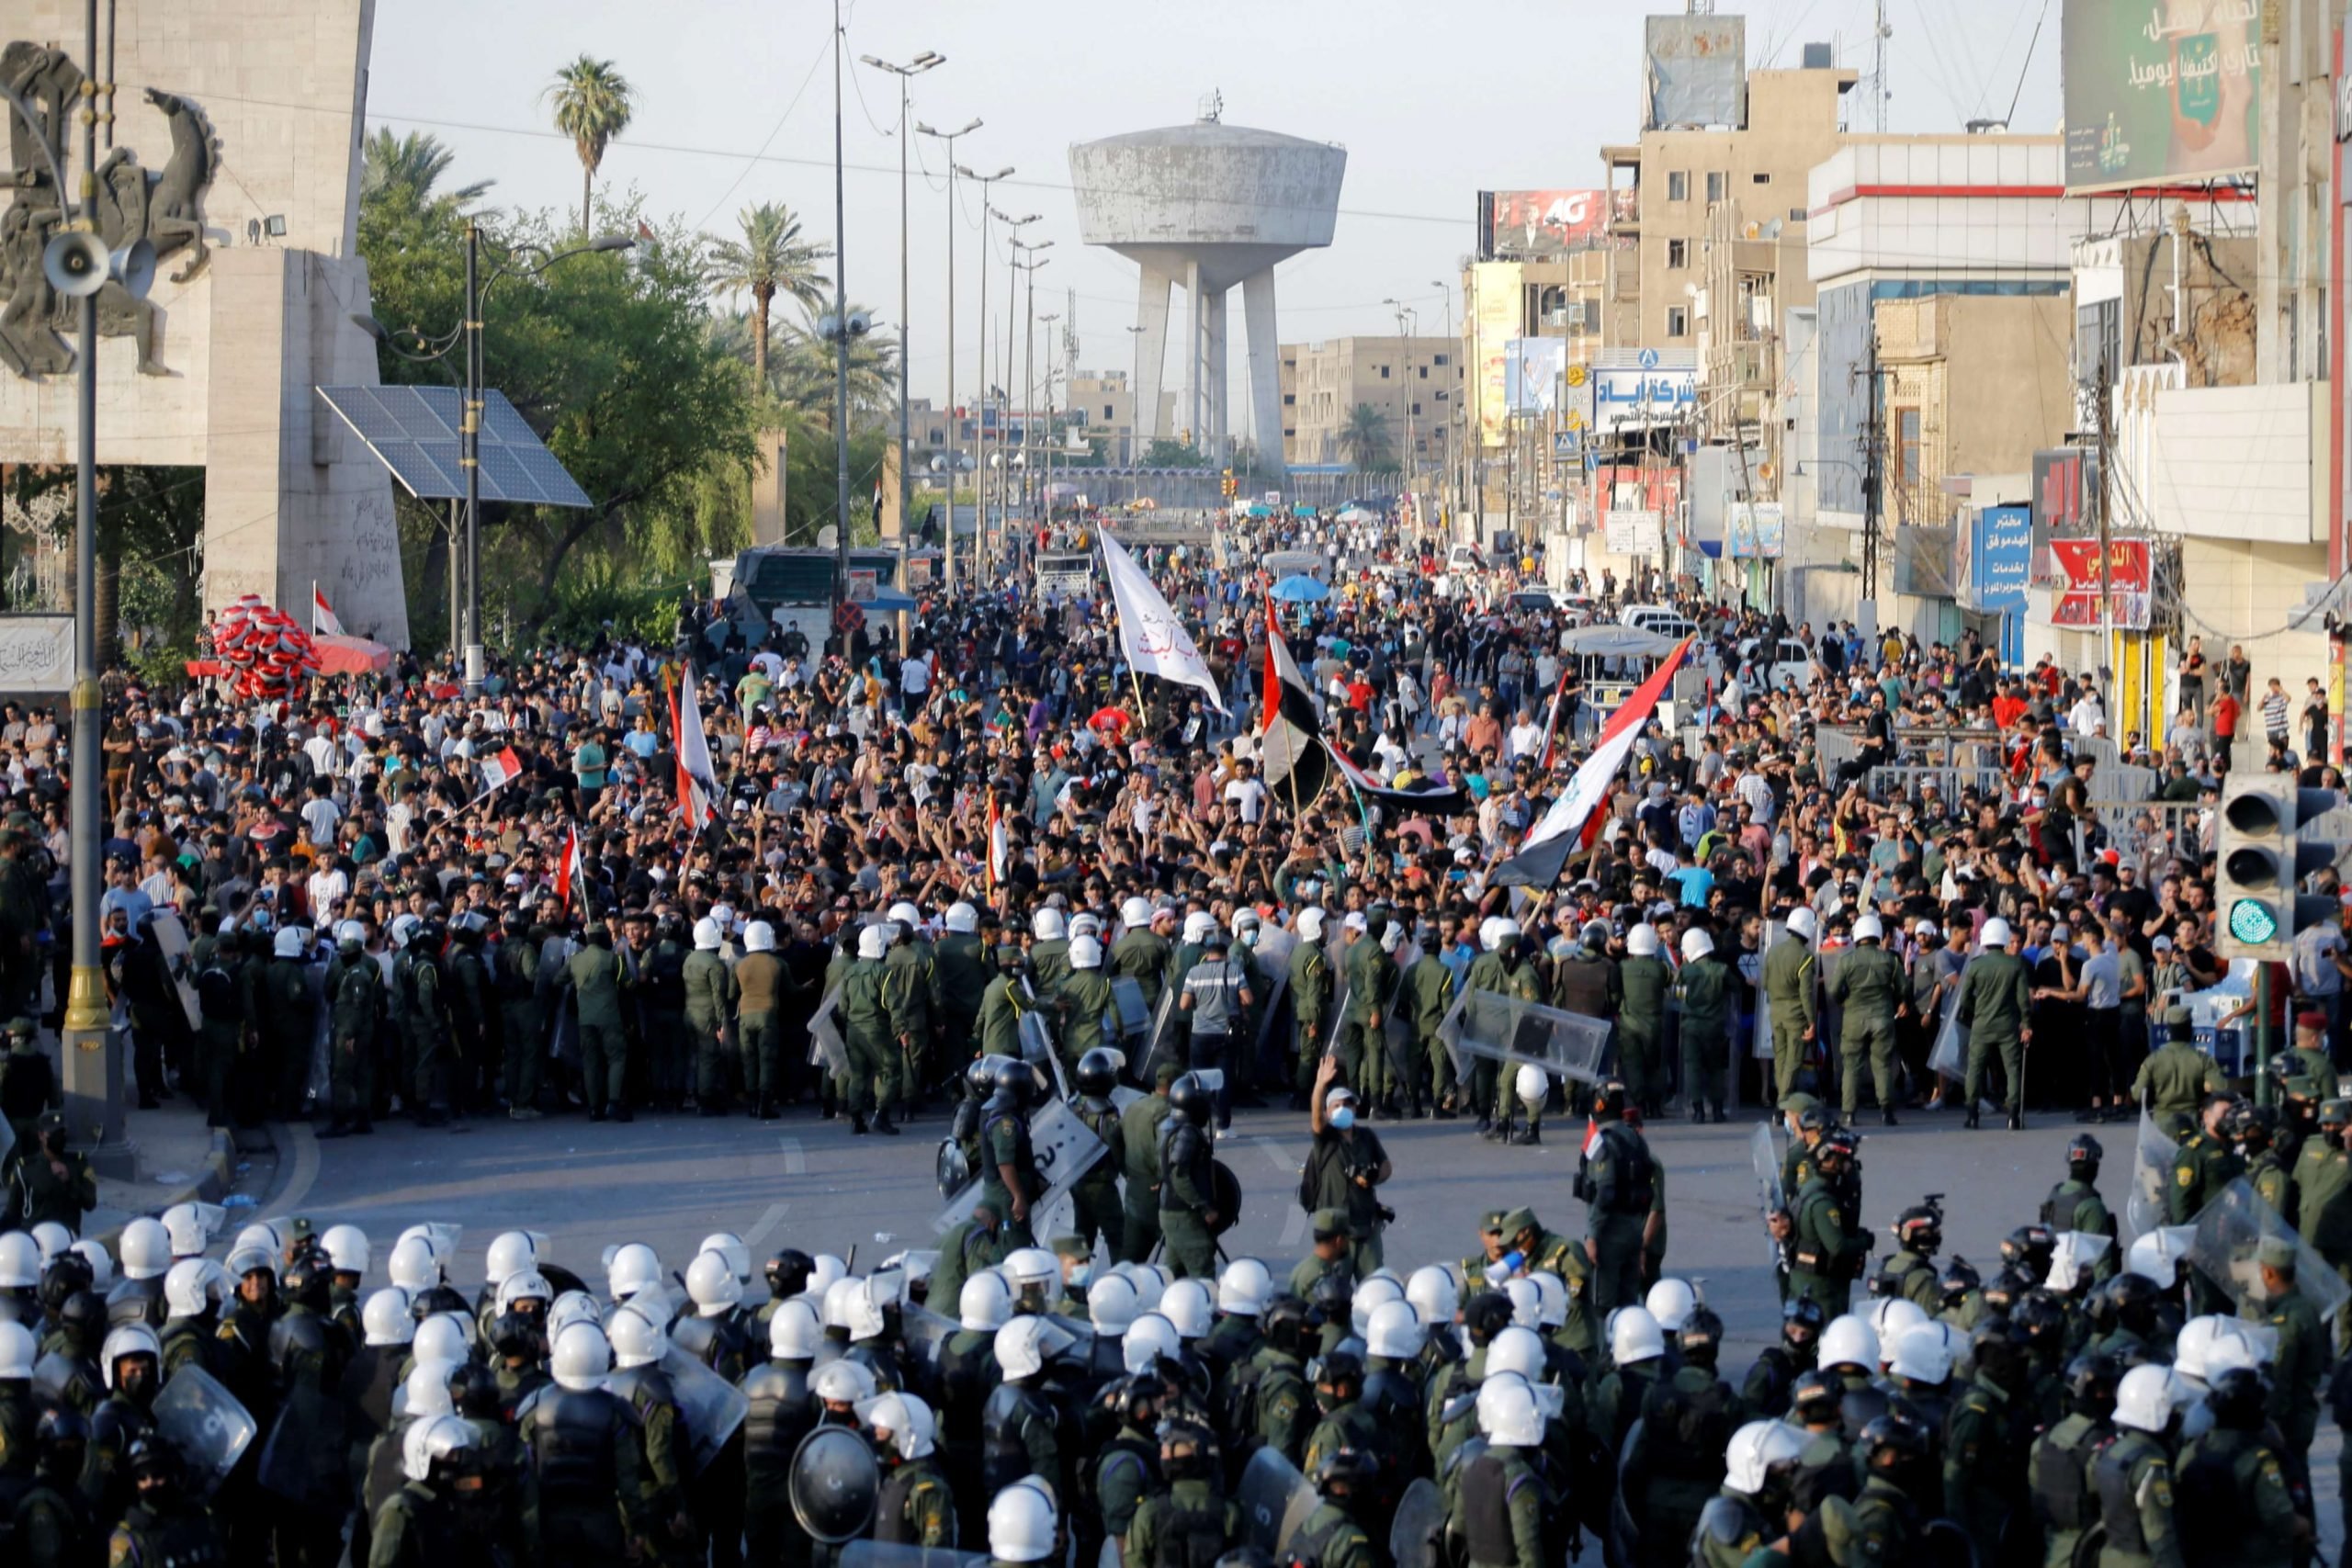 مقتل متظاهر وإصابة آخرين برصاص قوات الأمن في بغداد